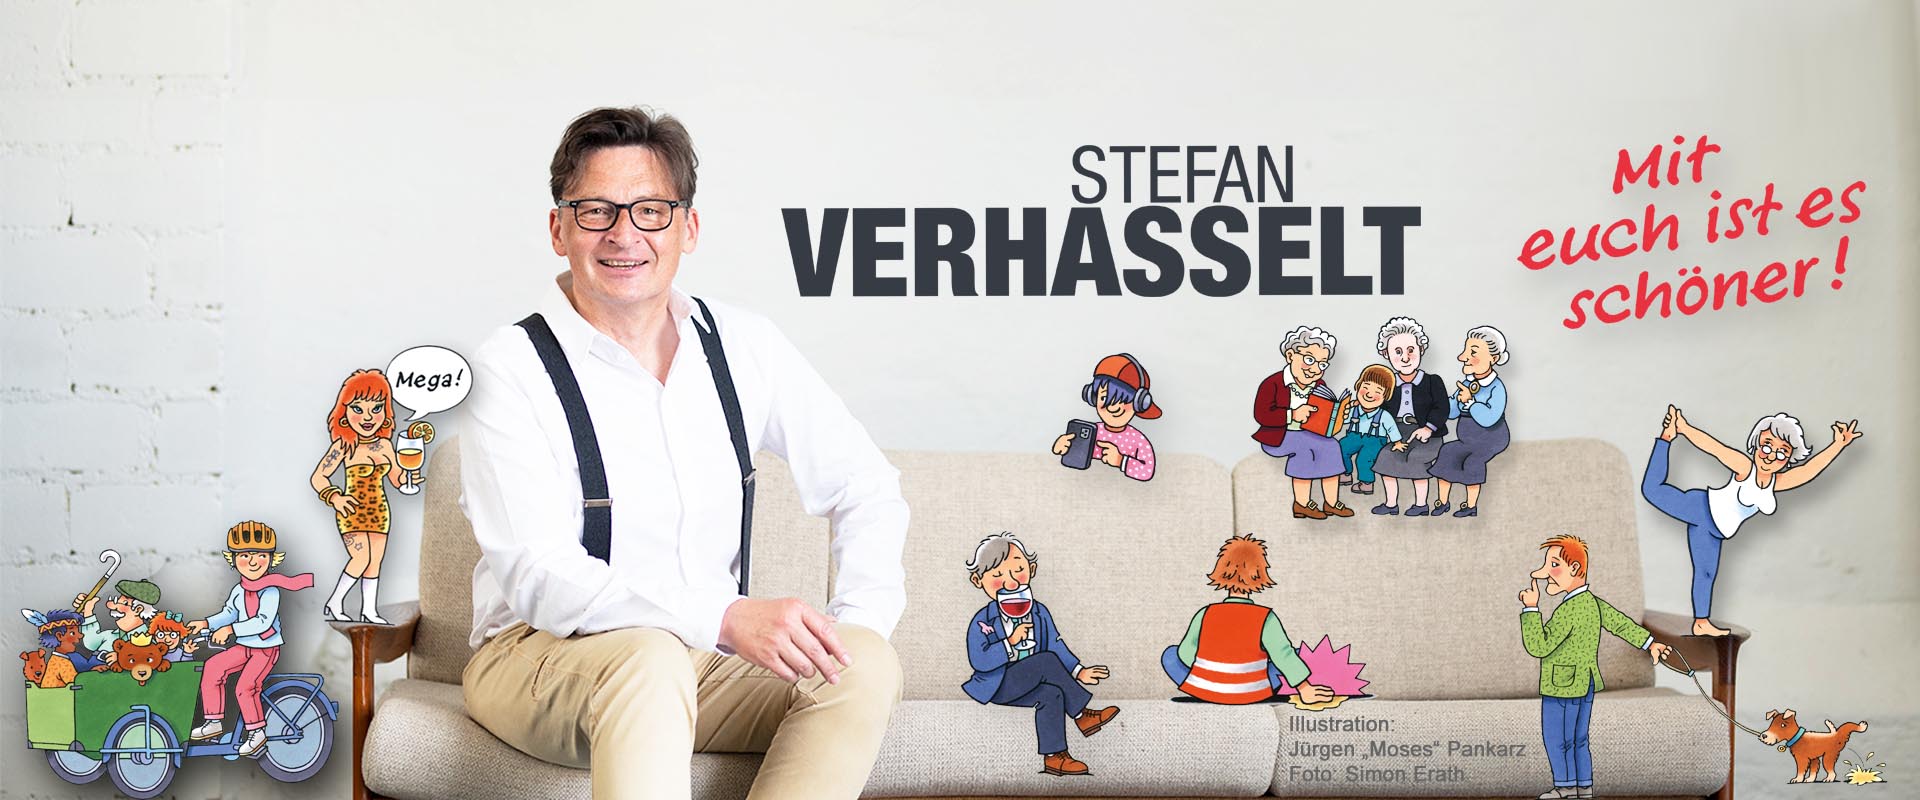 Stefan Verhasselt - Kabarett 6.0 - Mit euch ist es schöner